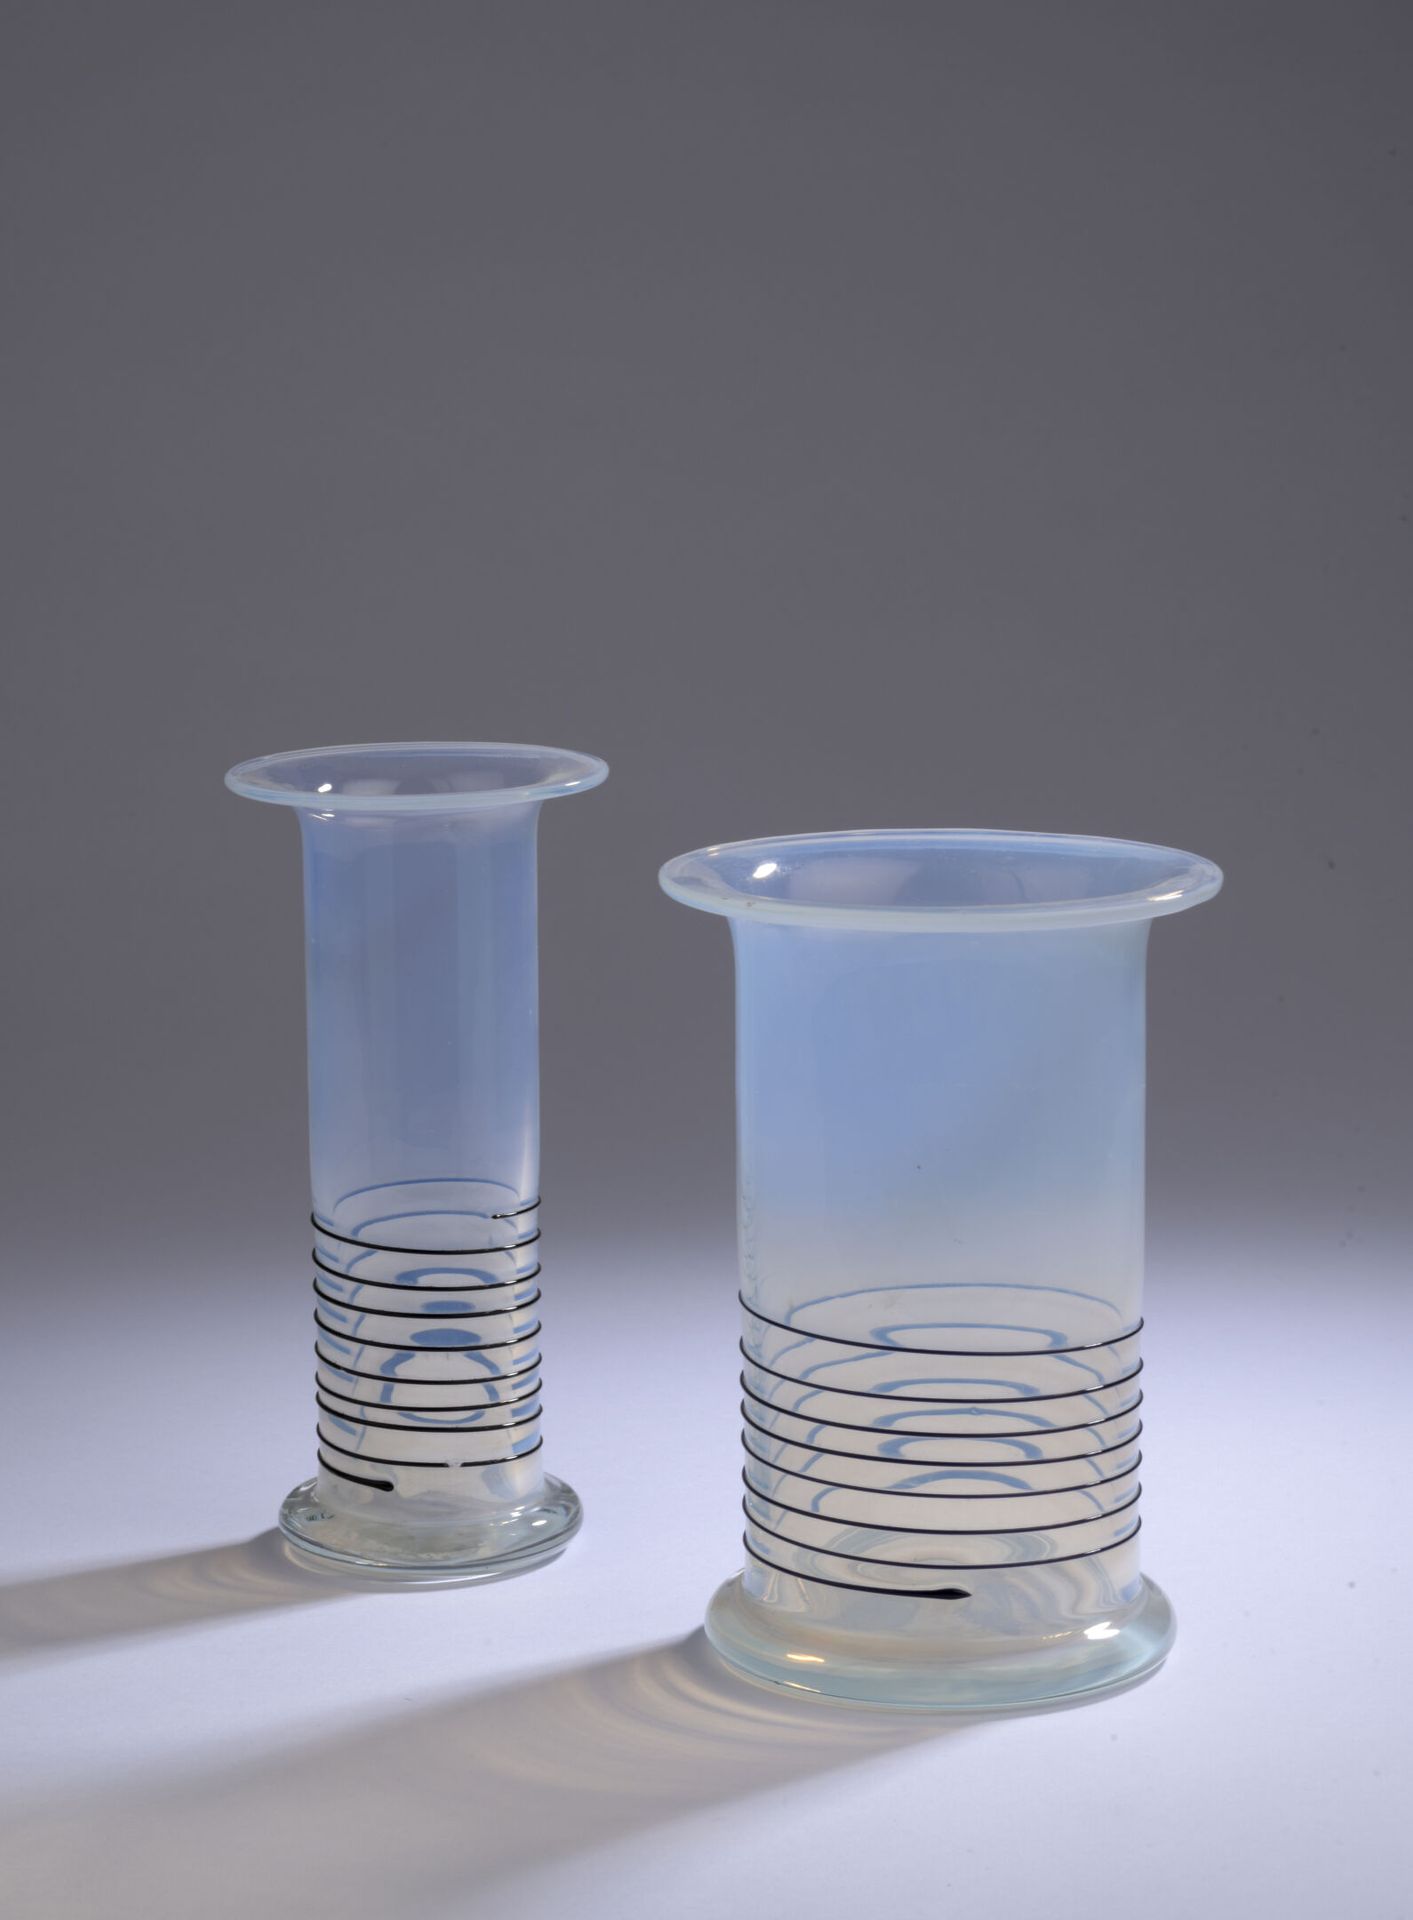 Null Opera italiana degli anni '90.

Serie di due vasi in vetro leggermente opal&hellip;